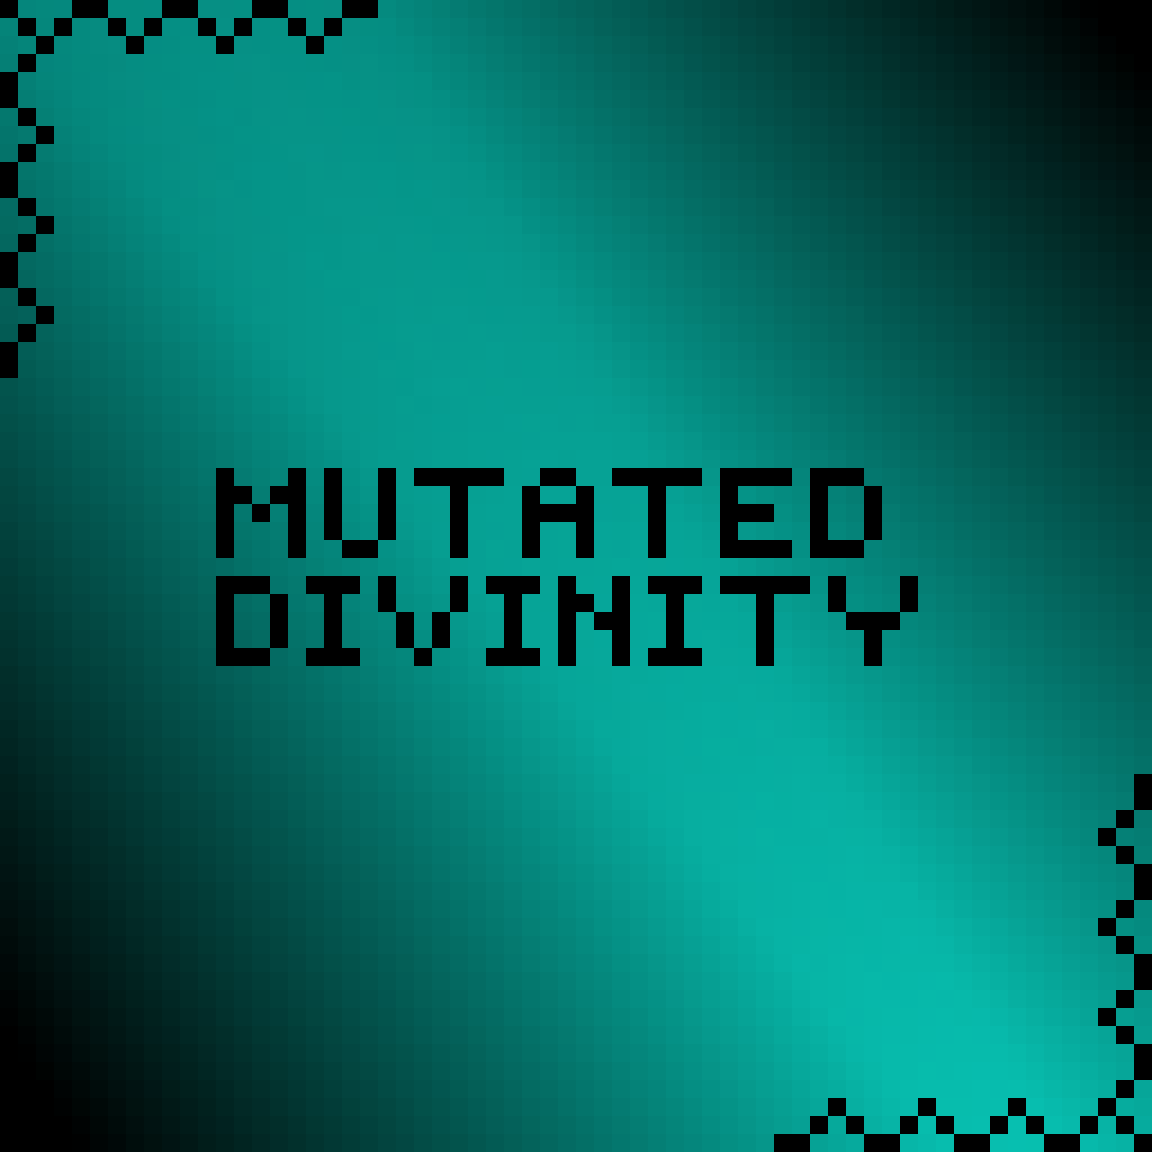 Mutateddivinity